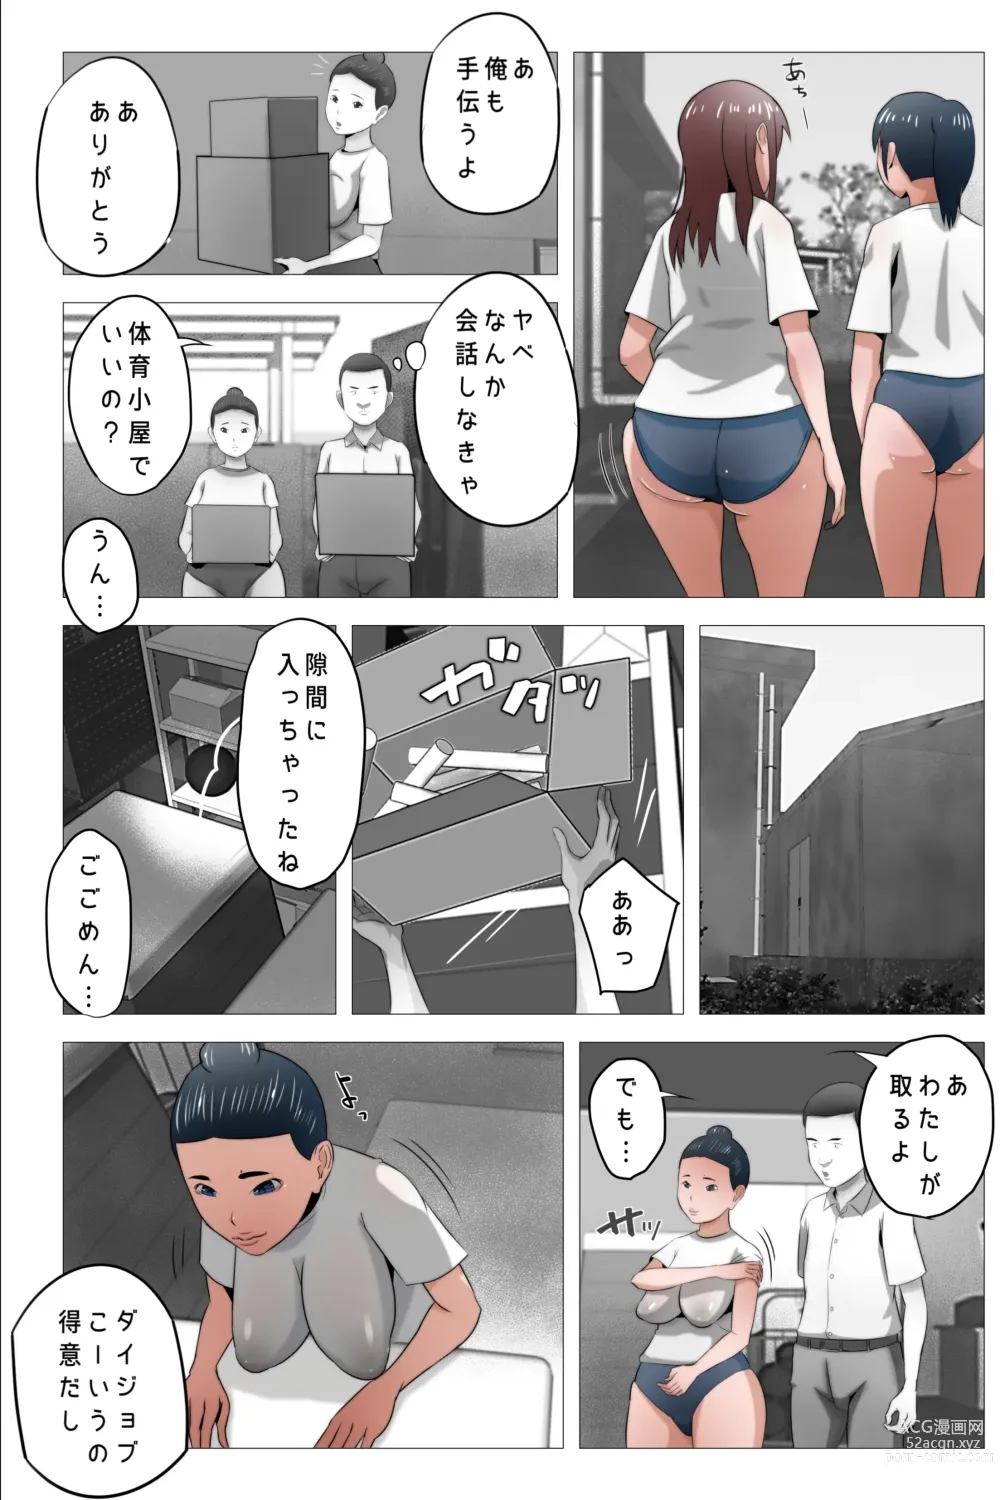 Page 7 of doujinshi Watashi wa Naze Choi Busu ni Koufun suru no desu ka?